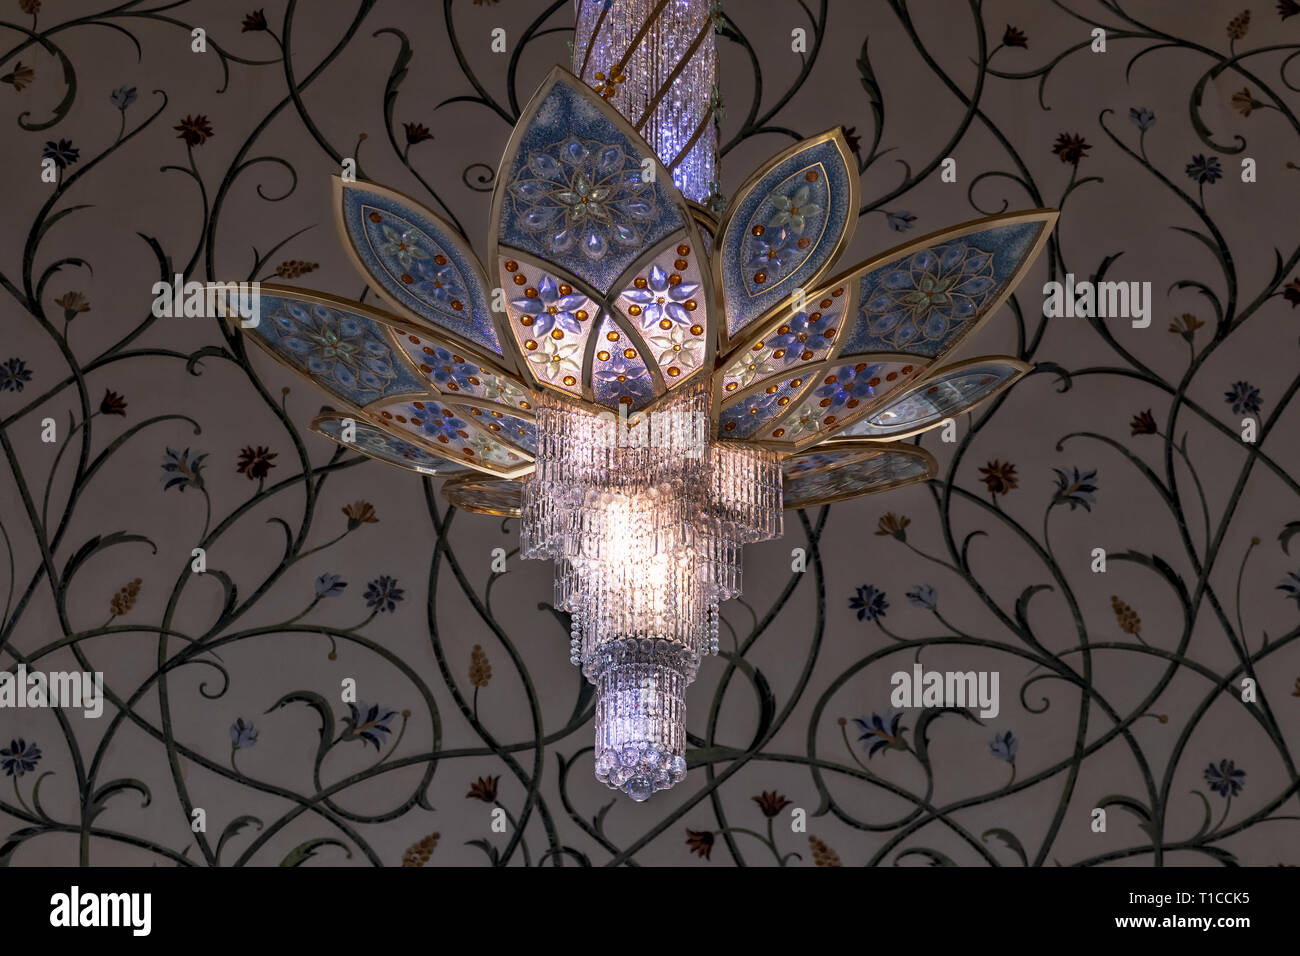 UAE/ABUDHABI - 15 DEZ 2018 - swaroski Lampen in der schönen Moschee von Abu Dhabi. UAE. Stockfoto